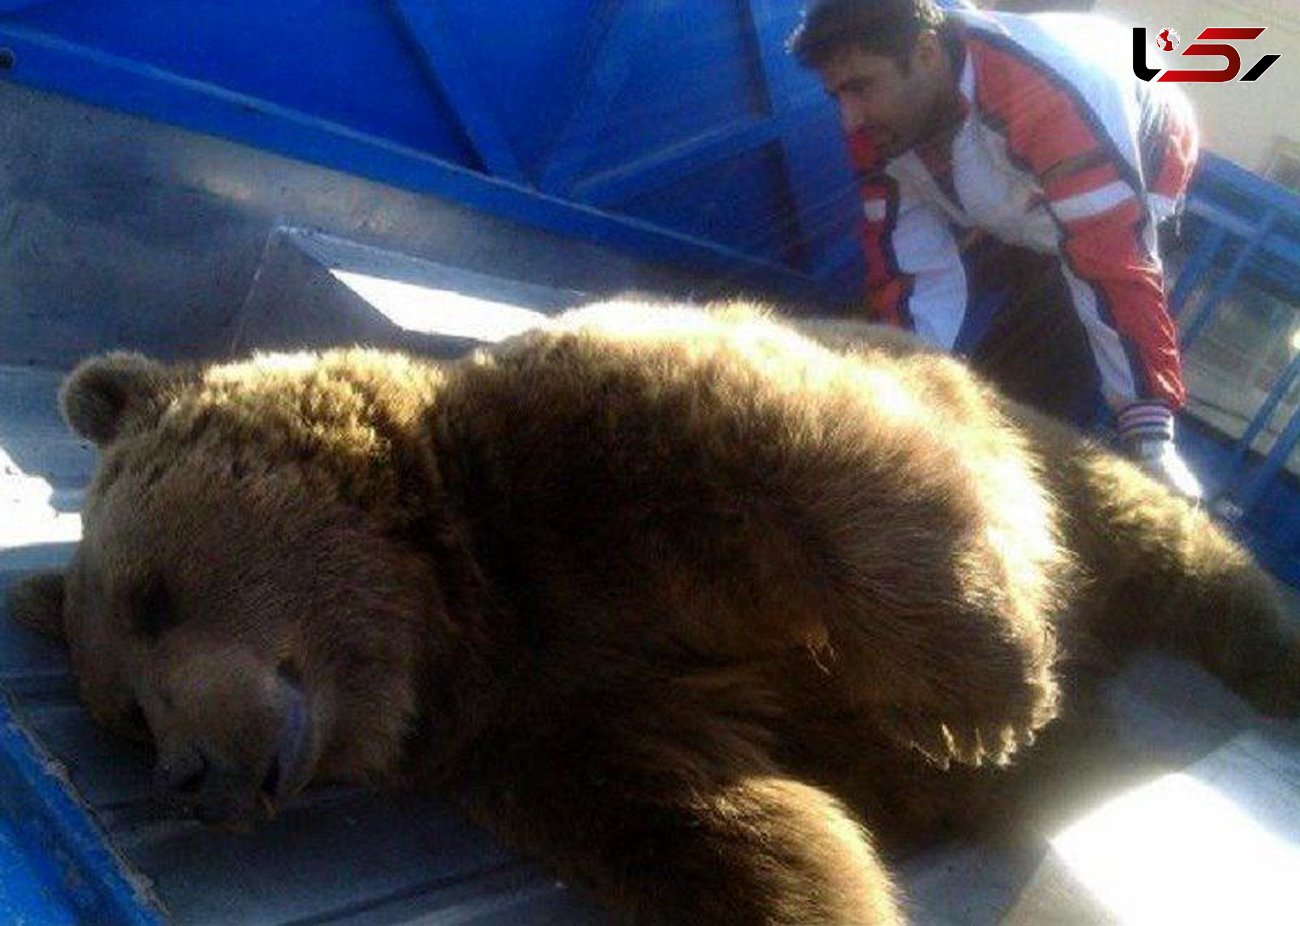 مرگ خرس قهوه ای در برخورد با قطار داخل تونل شیراز + عکس